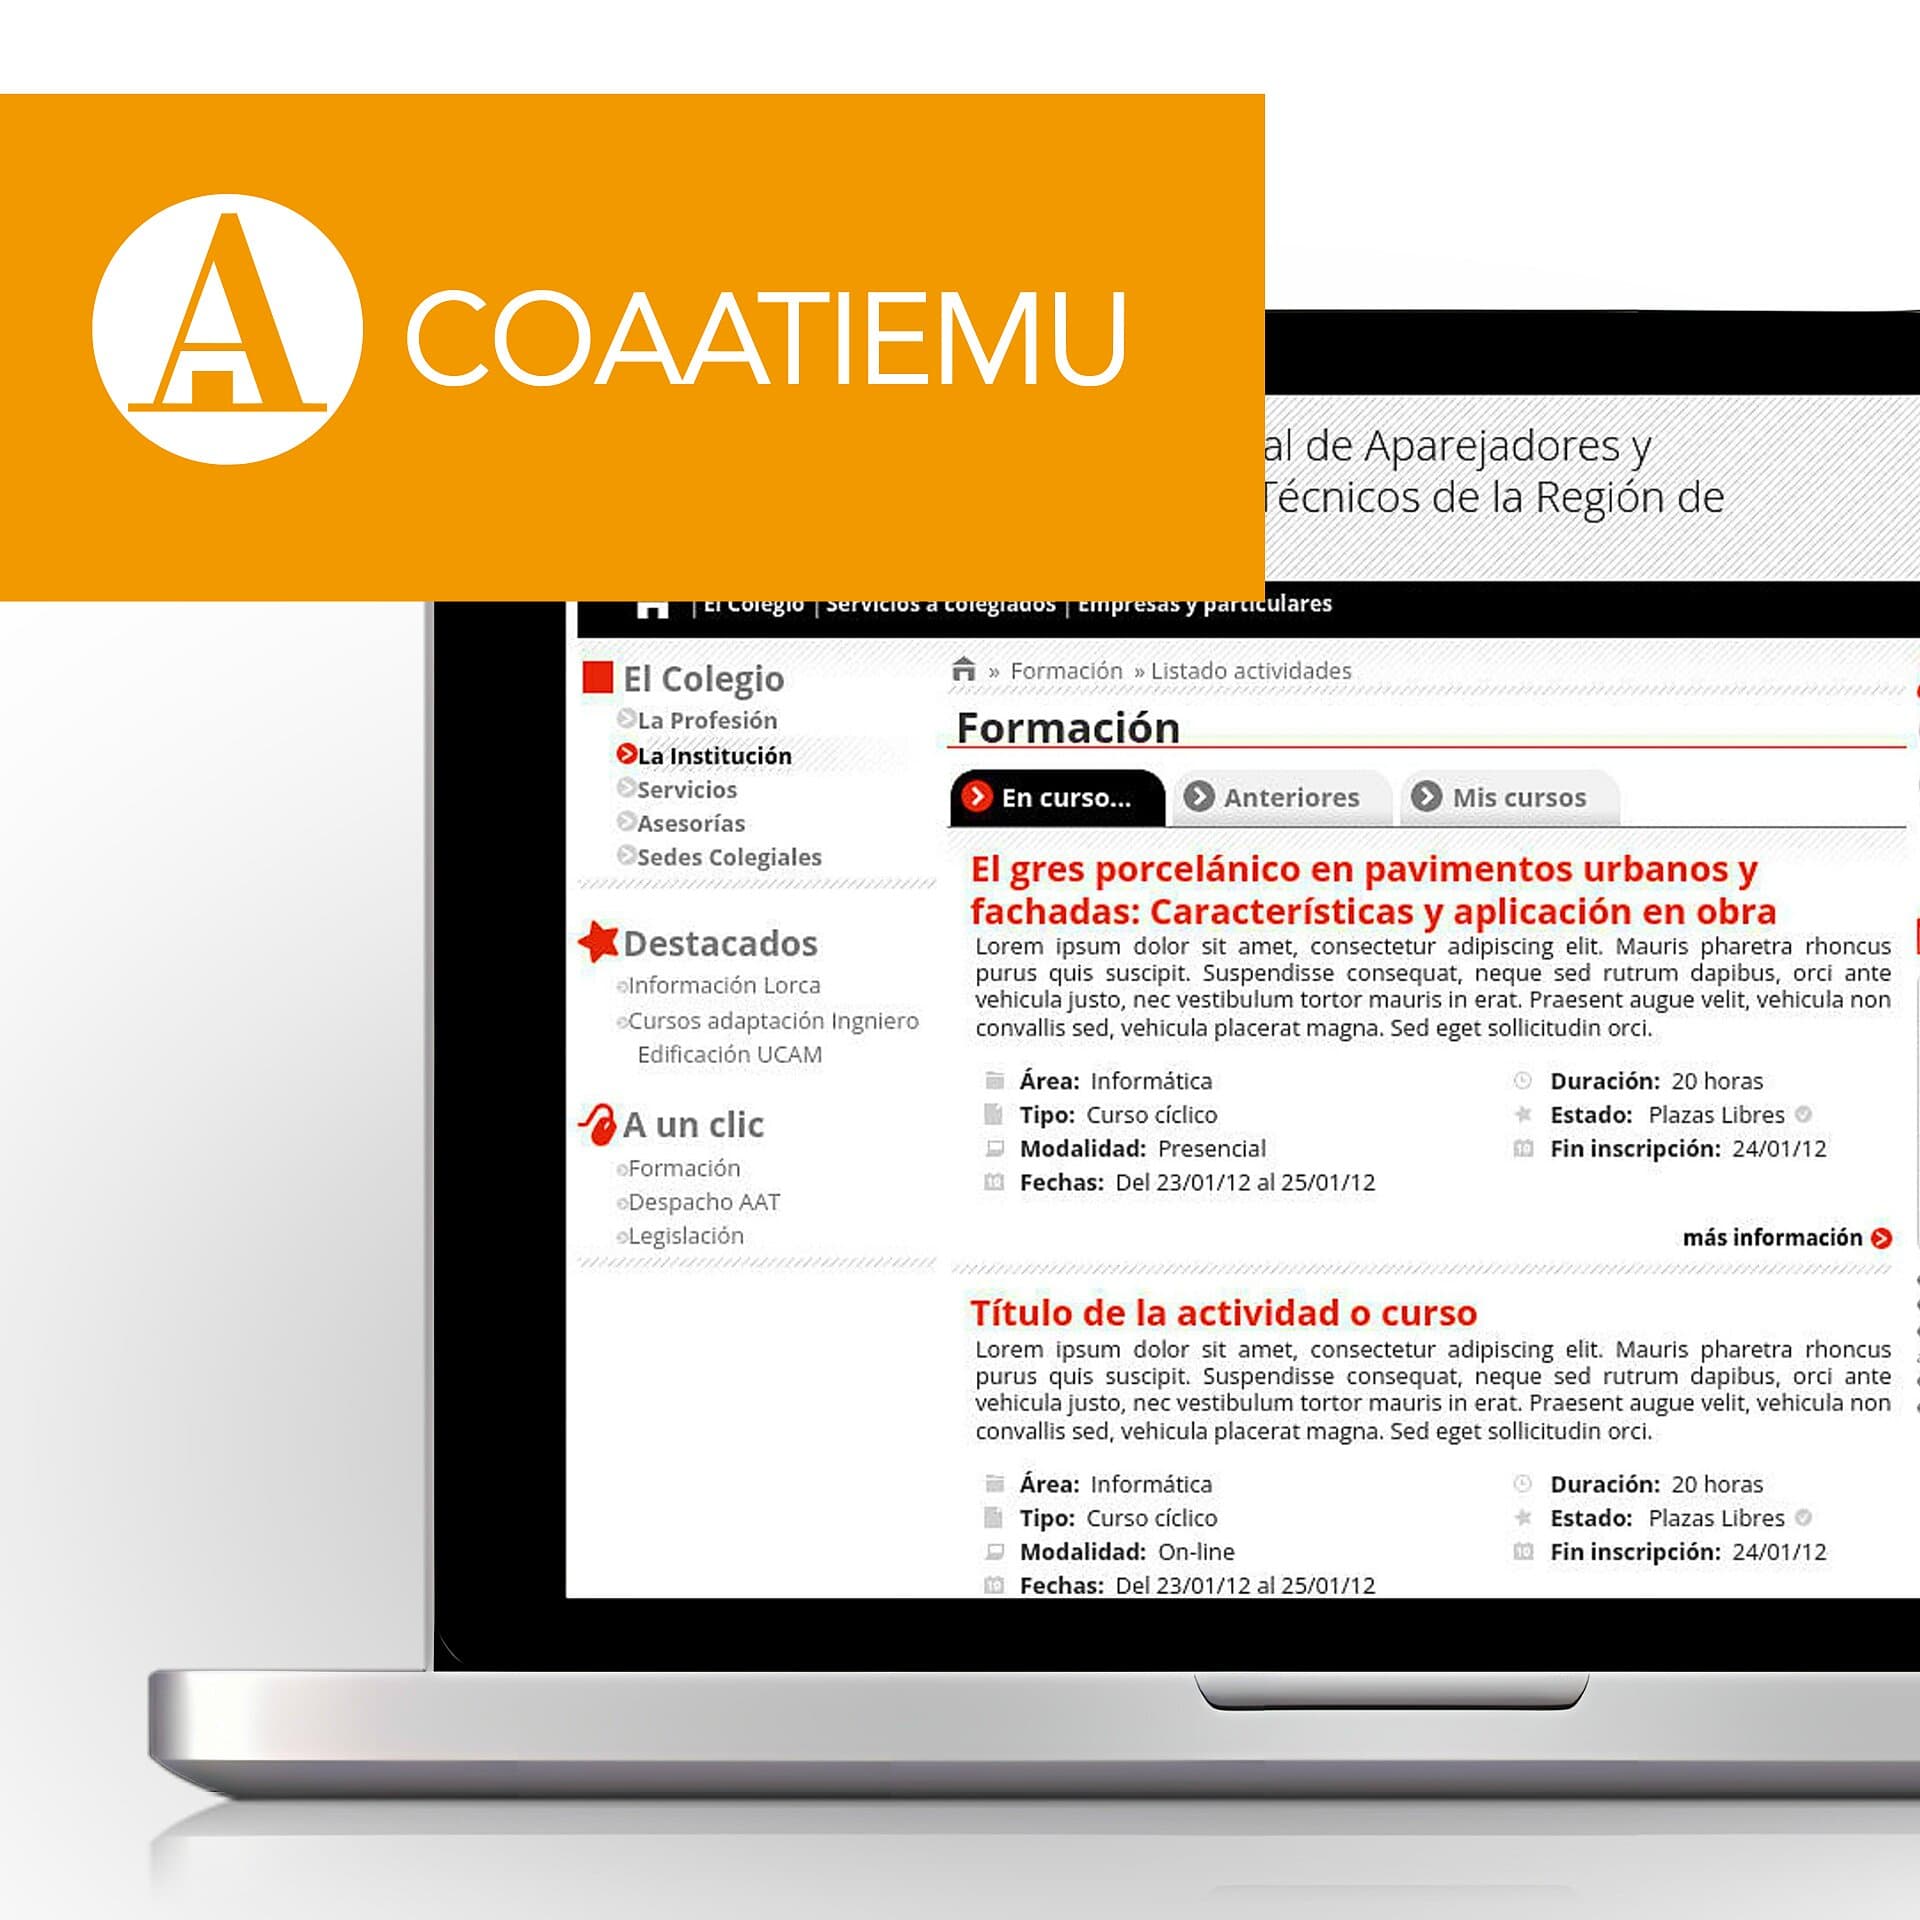 Arquitectura, Diseño y Maquetación de la web del COAATIEMU